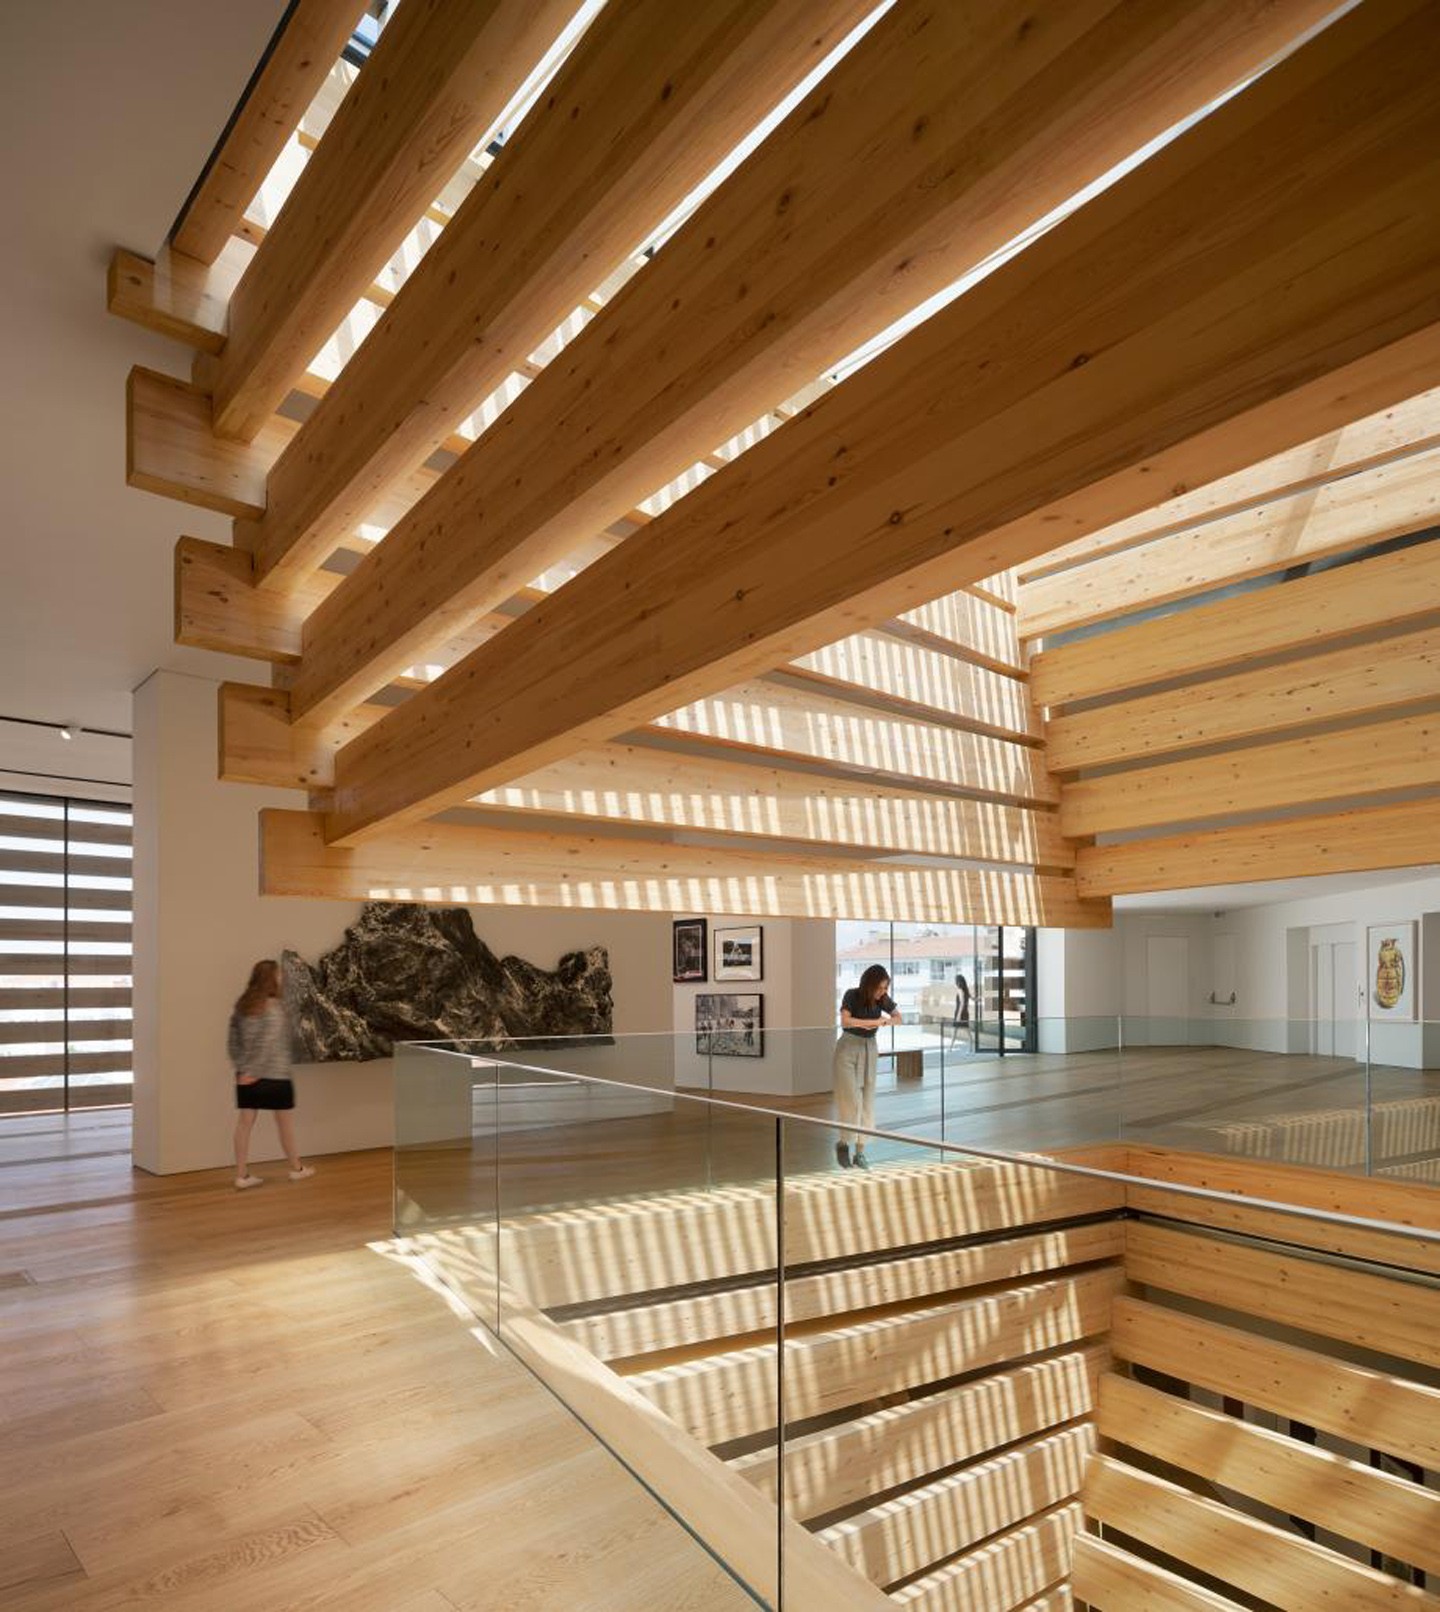 Museu na Turquia assinado por Kengo Kuma & Associates inaugura com estrutura de blocos de madeira (Foto: NAARO/Divulgação)